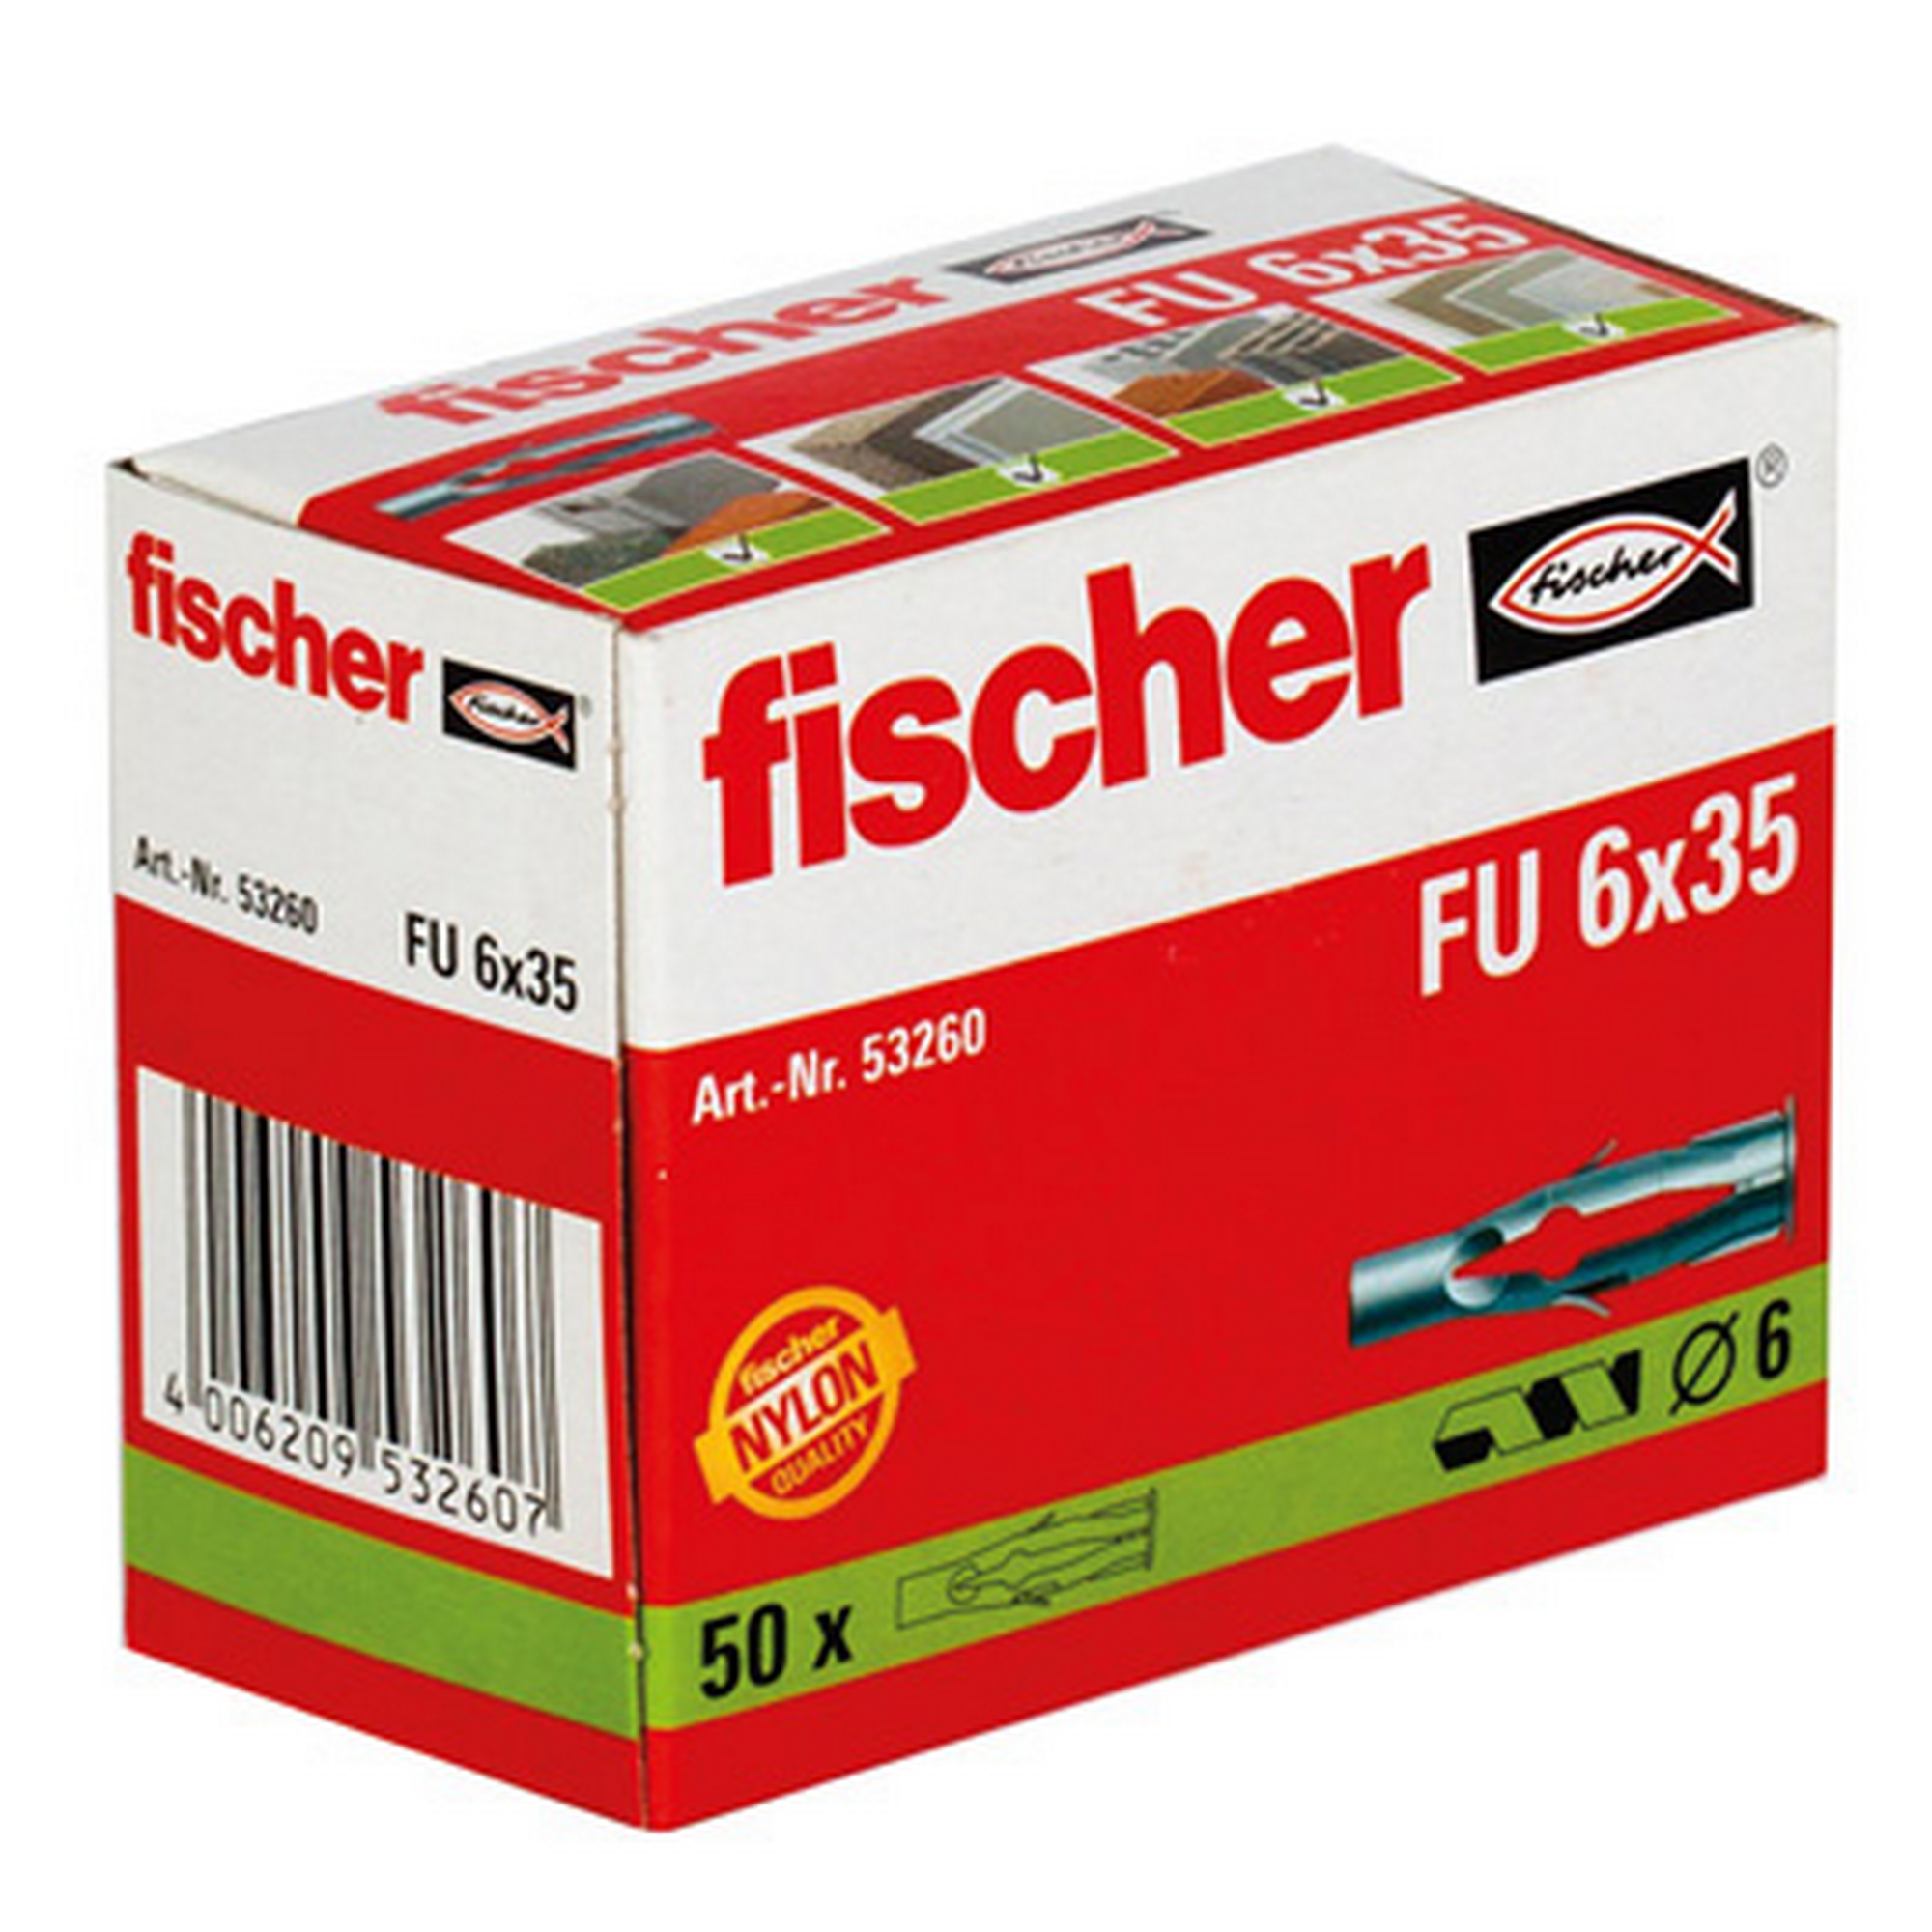 fischer Universaldübel FU 6 x 35 50 Stück + product picture